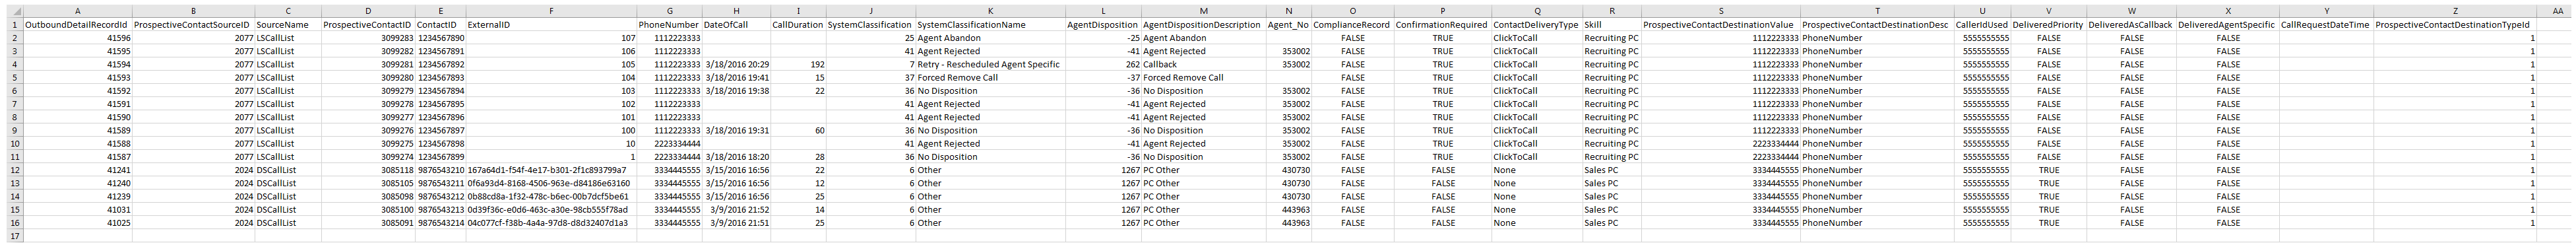 按创建日期清点列表数据下载报告输出的示例。